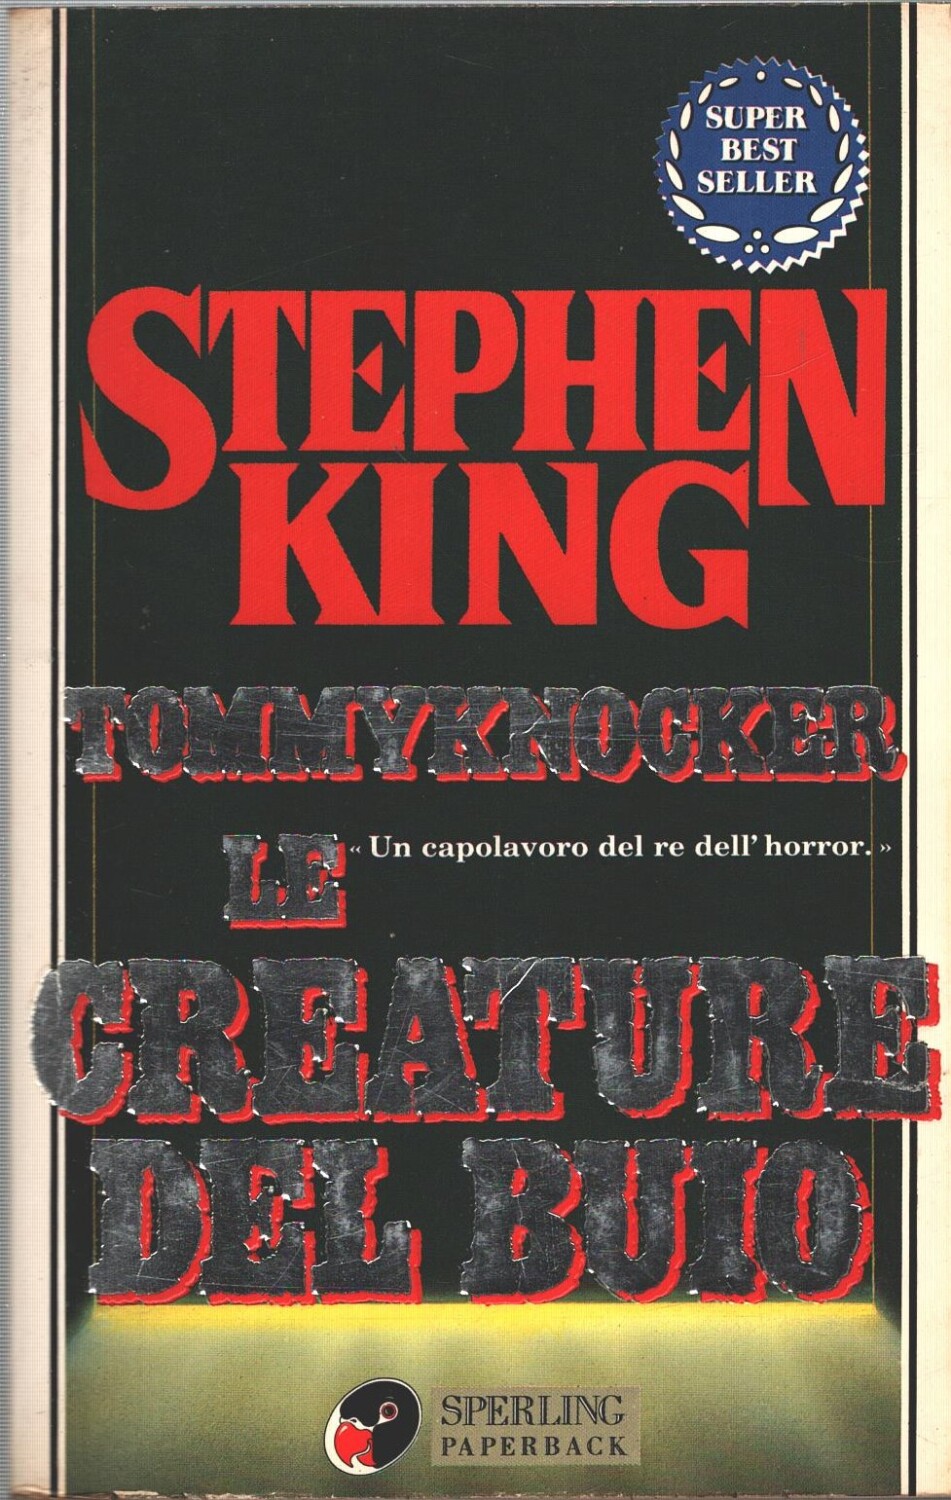 Le creature del buio - Tommyknocker di King, Stephen ed. Sperling & Kupfer